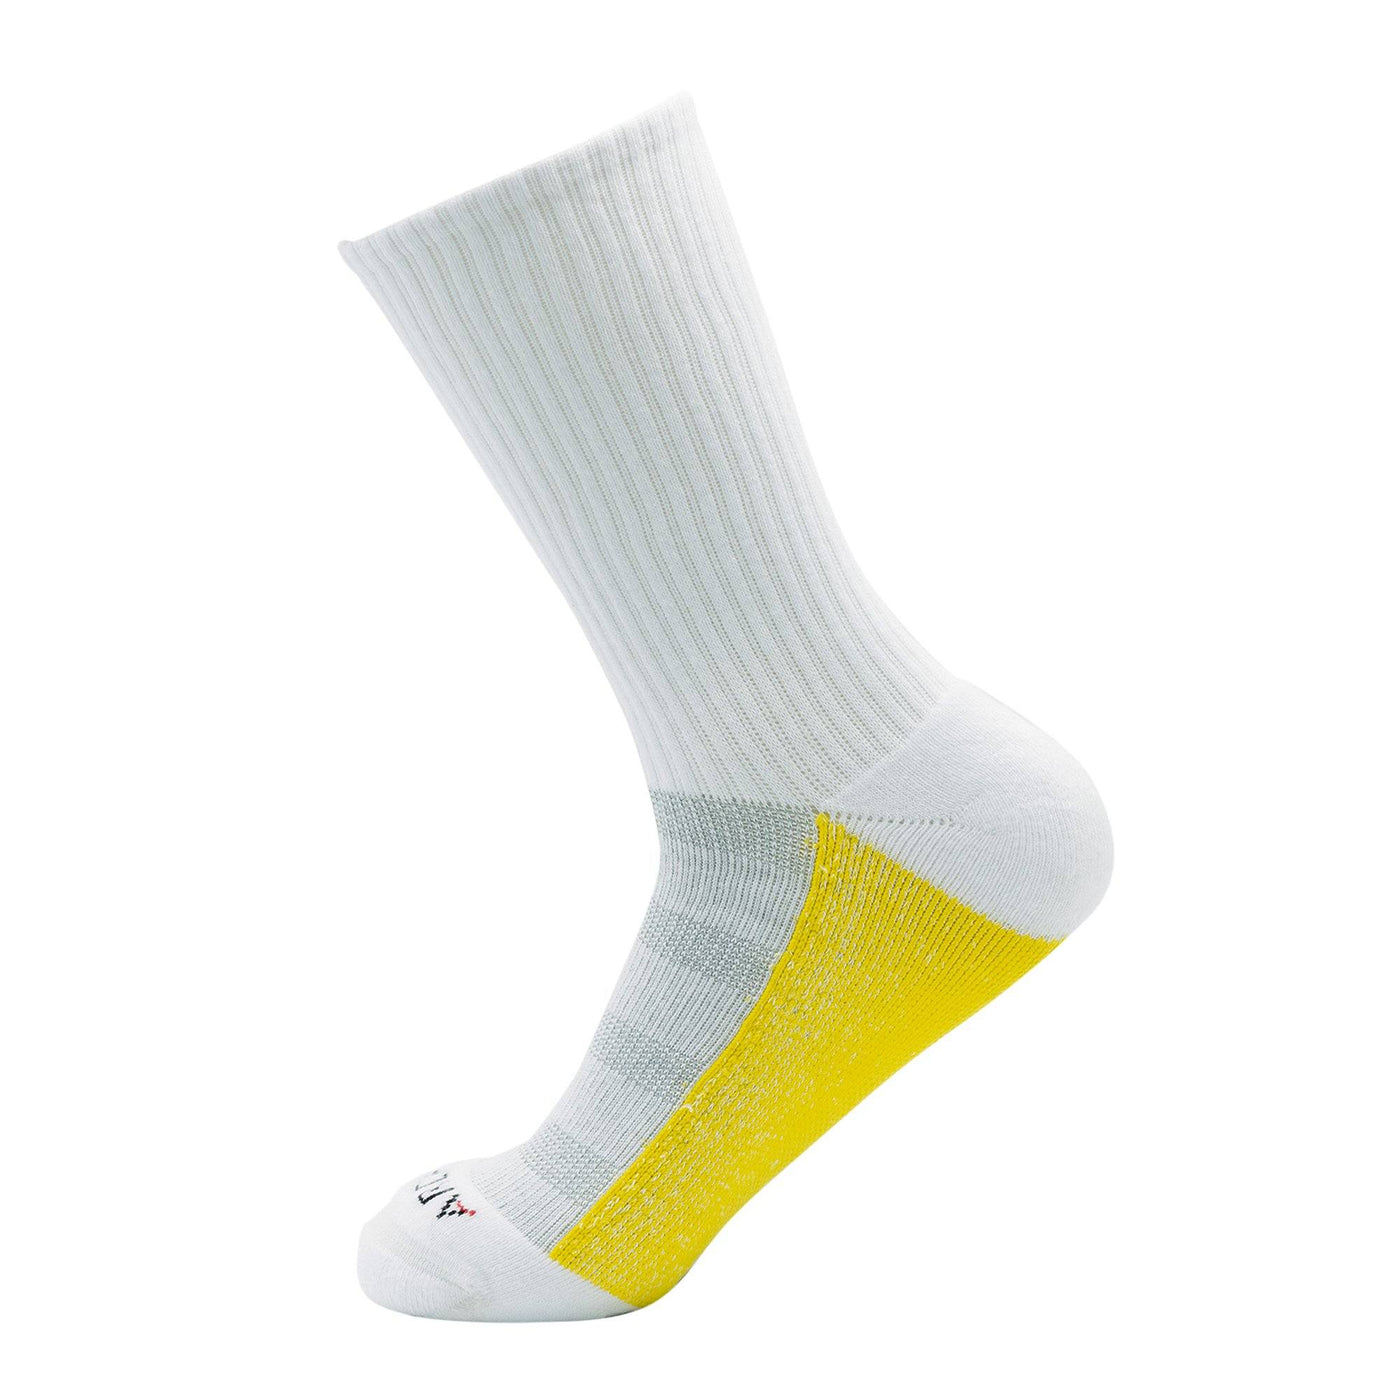 ArchTek® Crew Socks (6 Pack White) athletic socks ArchTek 